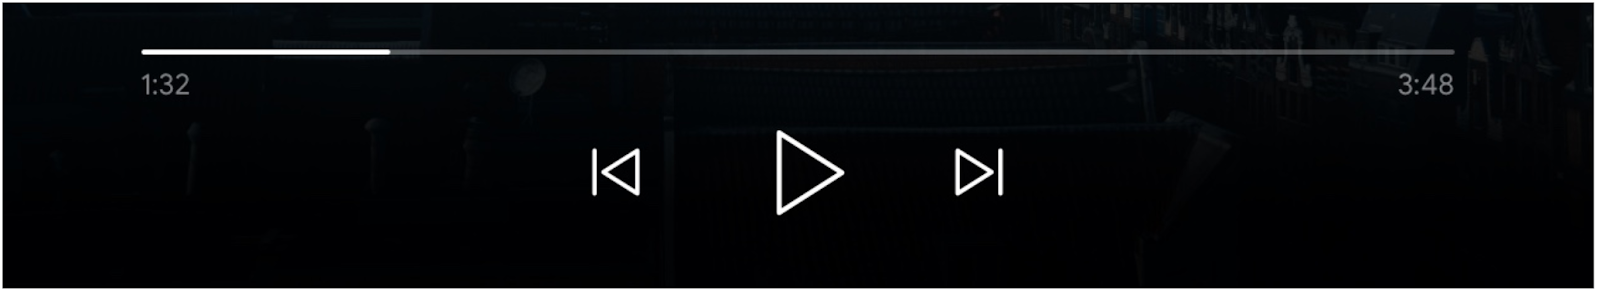 Imagen de los controles del reproductor multimedia: barra de progreso, botón “Reproducir” y los botones “Cola anterior” y “A continuación” habilitados